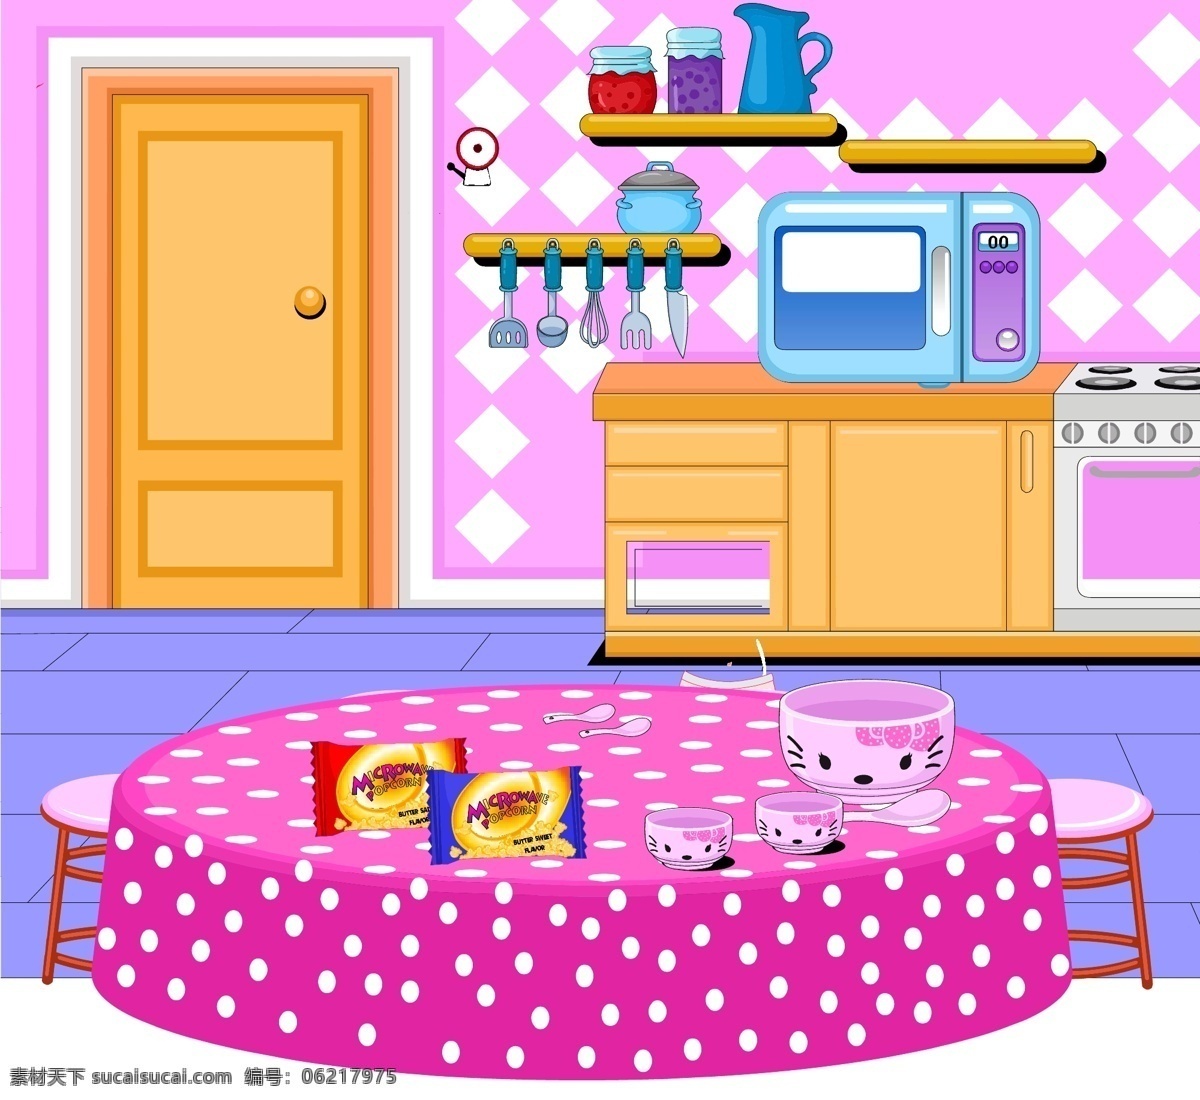 厨房插画 桌子 厨房 门 碗 杯子 卡通房间 公主房间 椅子 电磁炉 kt猫 框子 粉红色